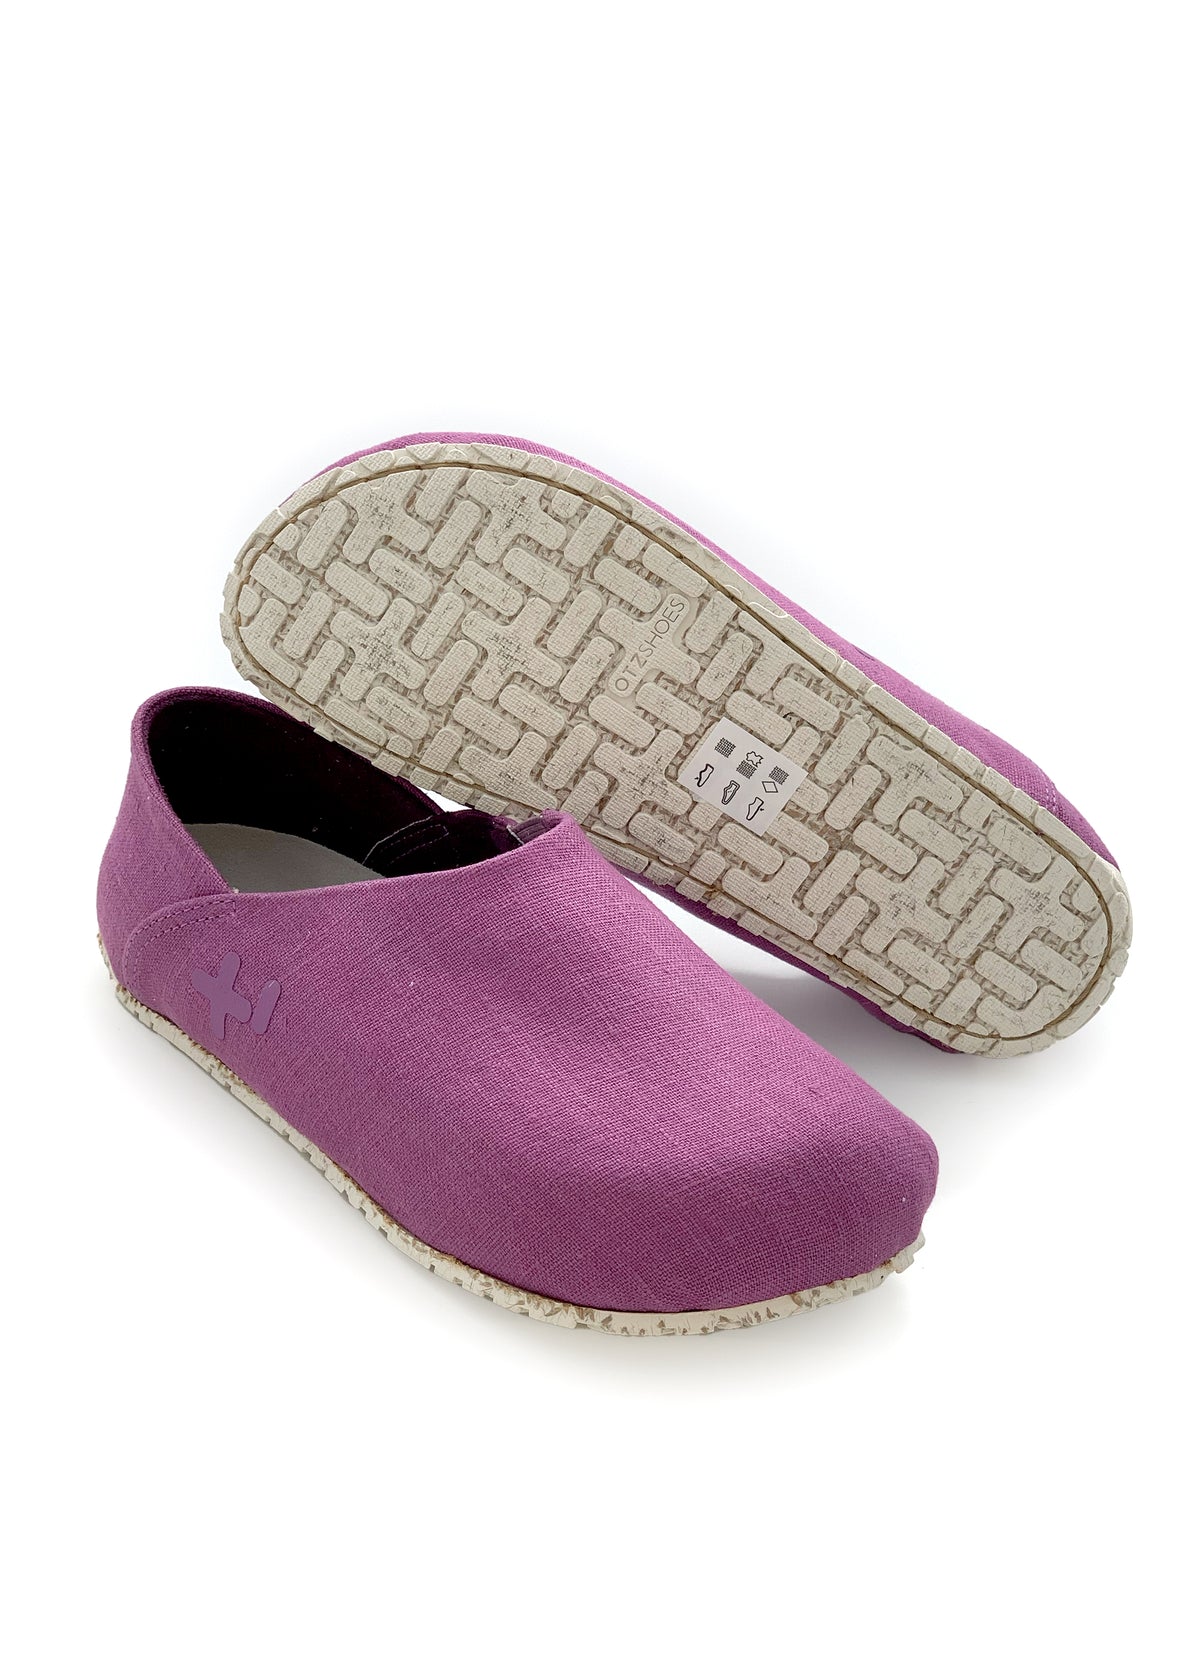 OTZ-kengät - violetti pellavakangas